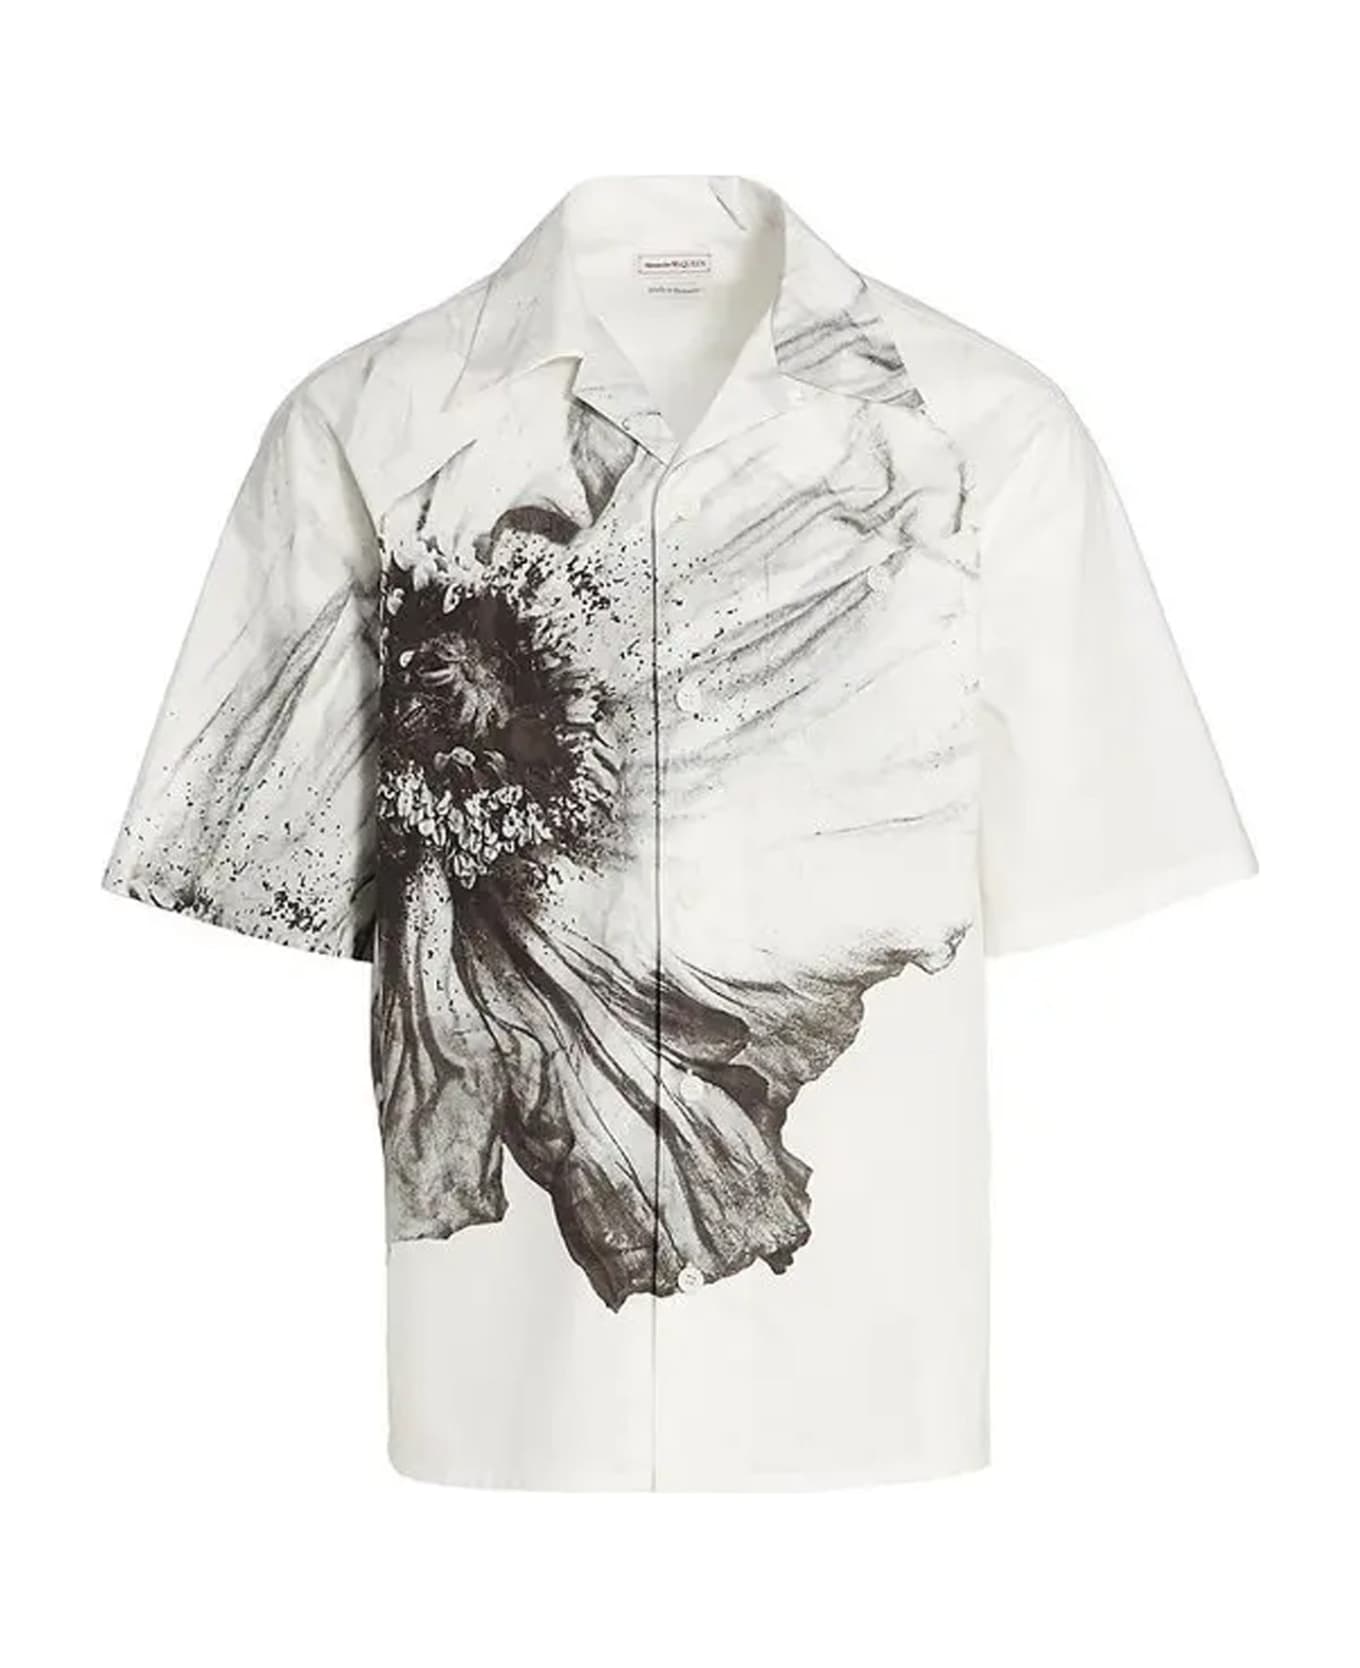 Alexander McQueen Short Sleeve Shirt - White